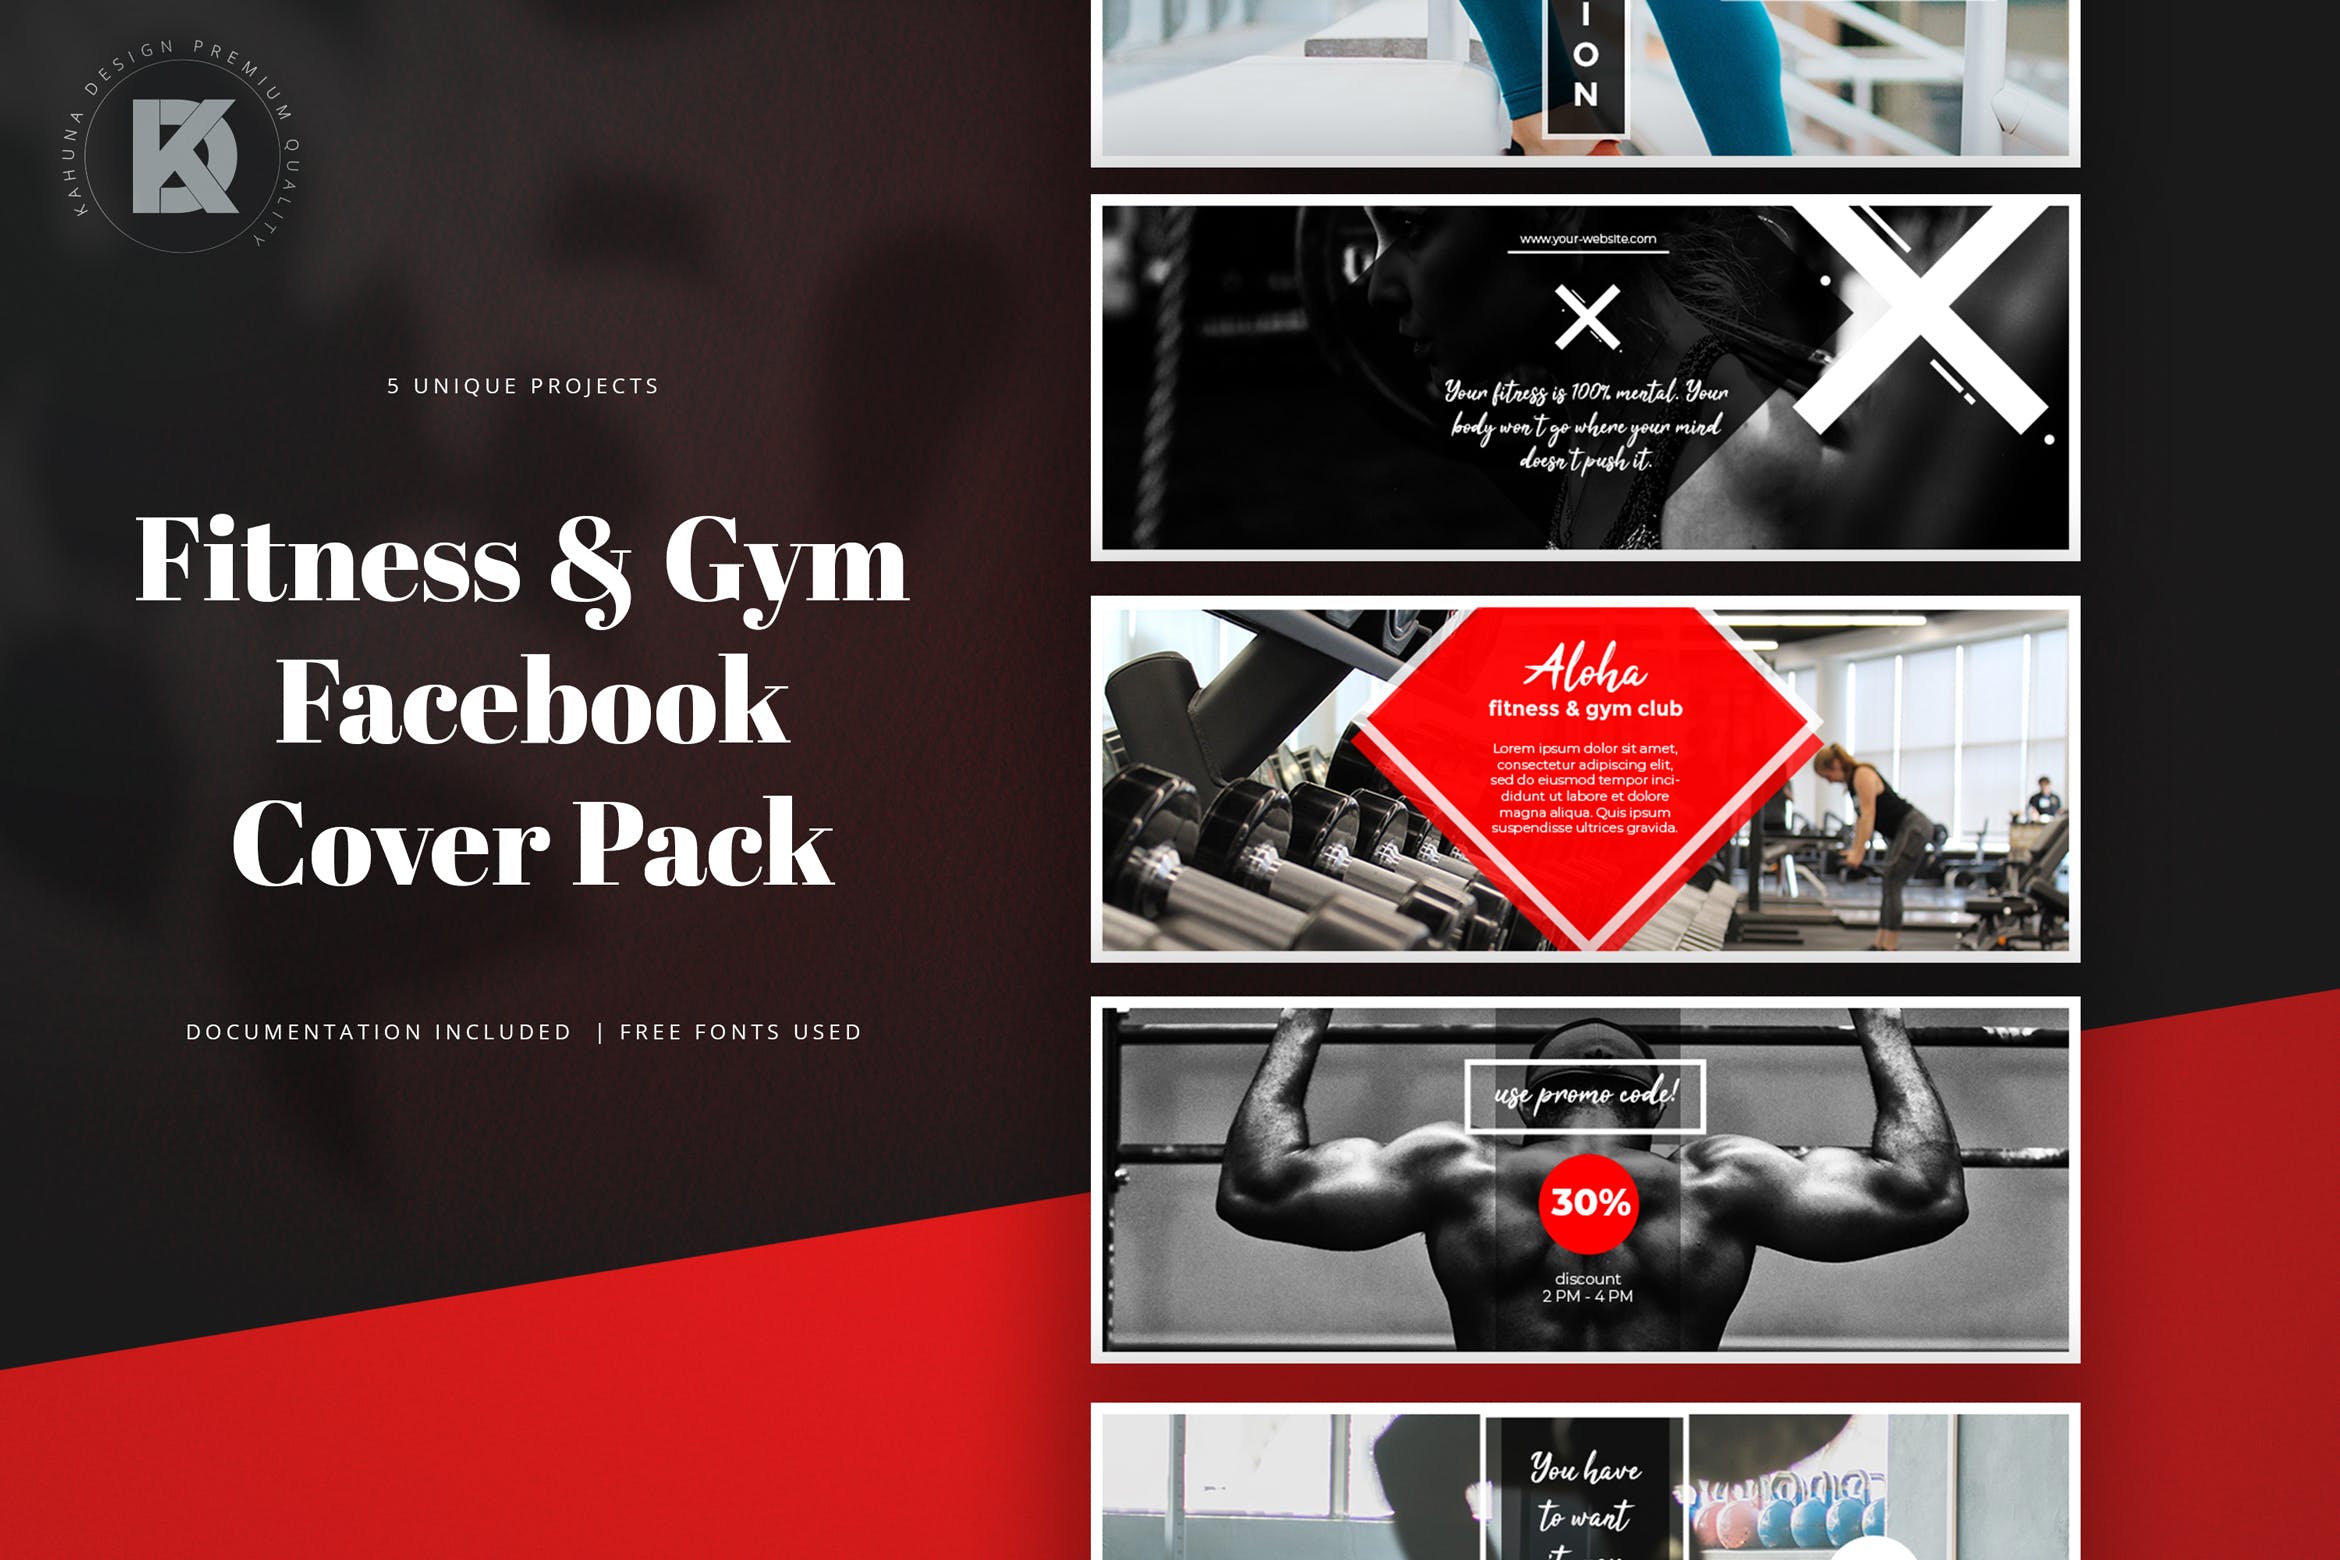 健身运动品牌Facebook封面设计模板16设计网精选 Fitness & Gym Facebook Cover Pack插图